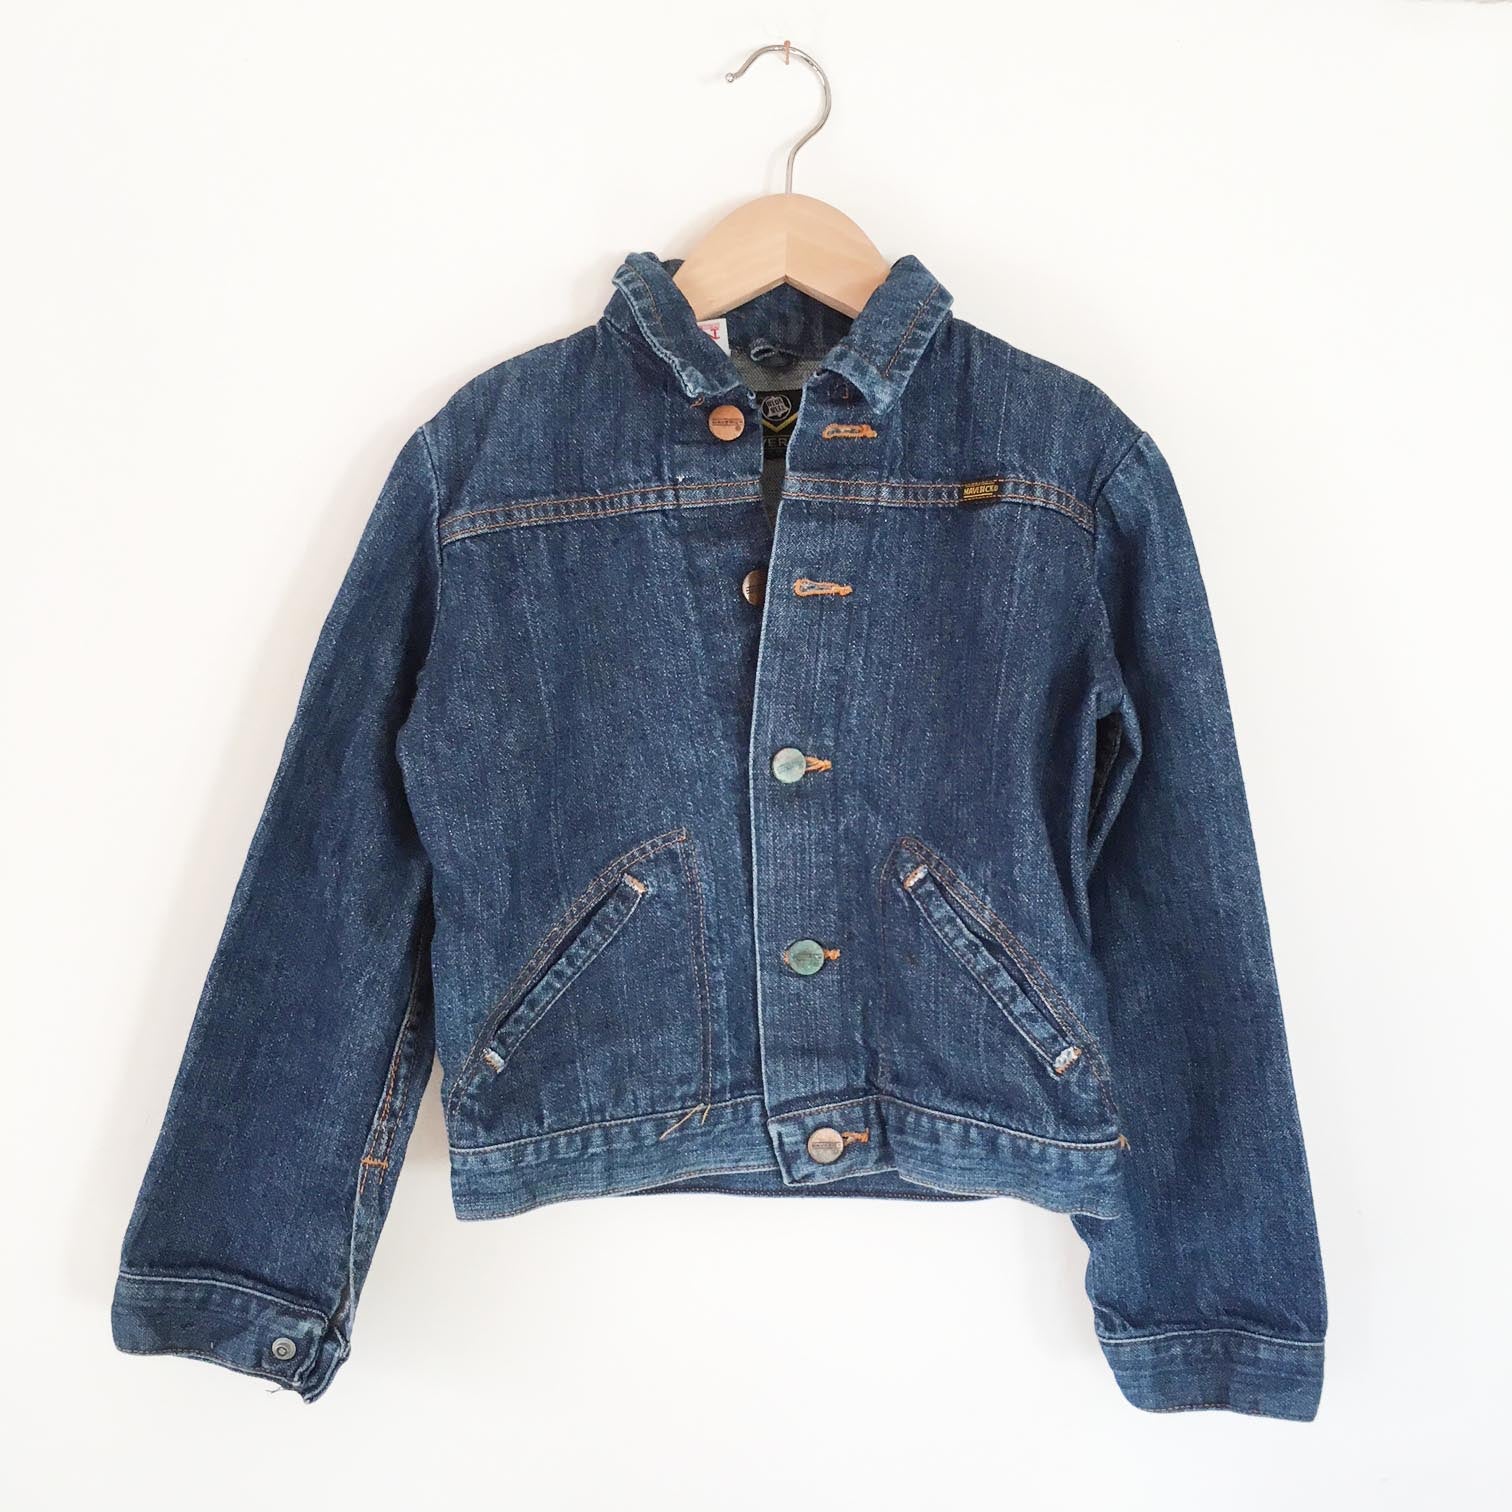 Vintage Maverick jacket size 8-10